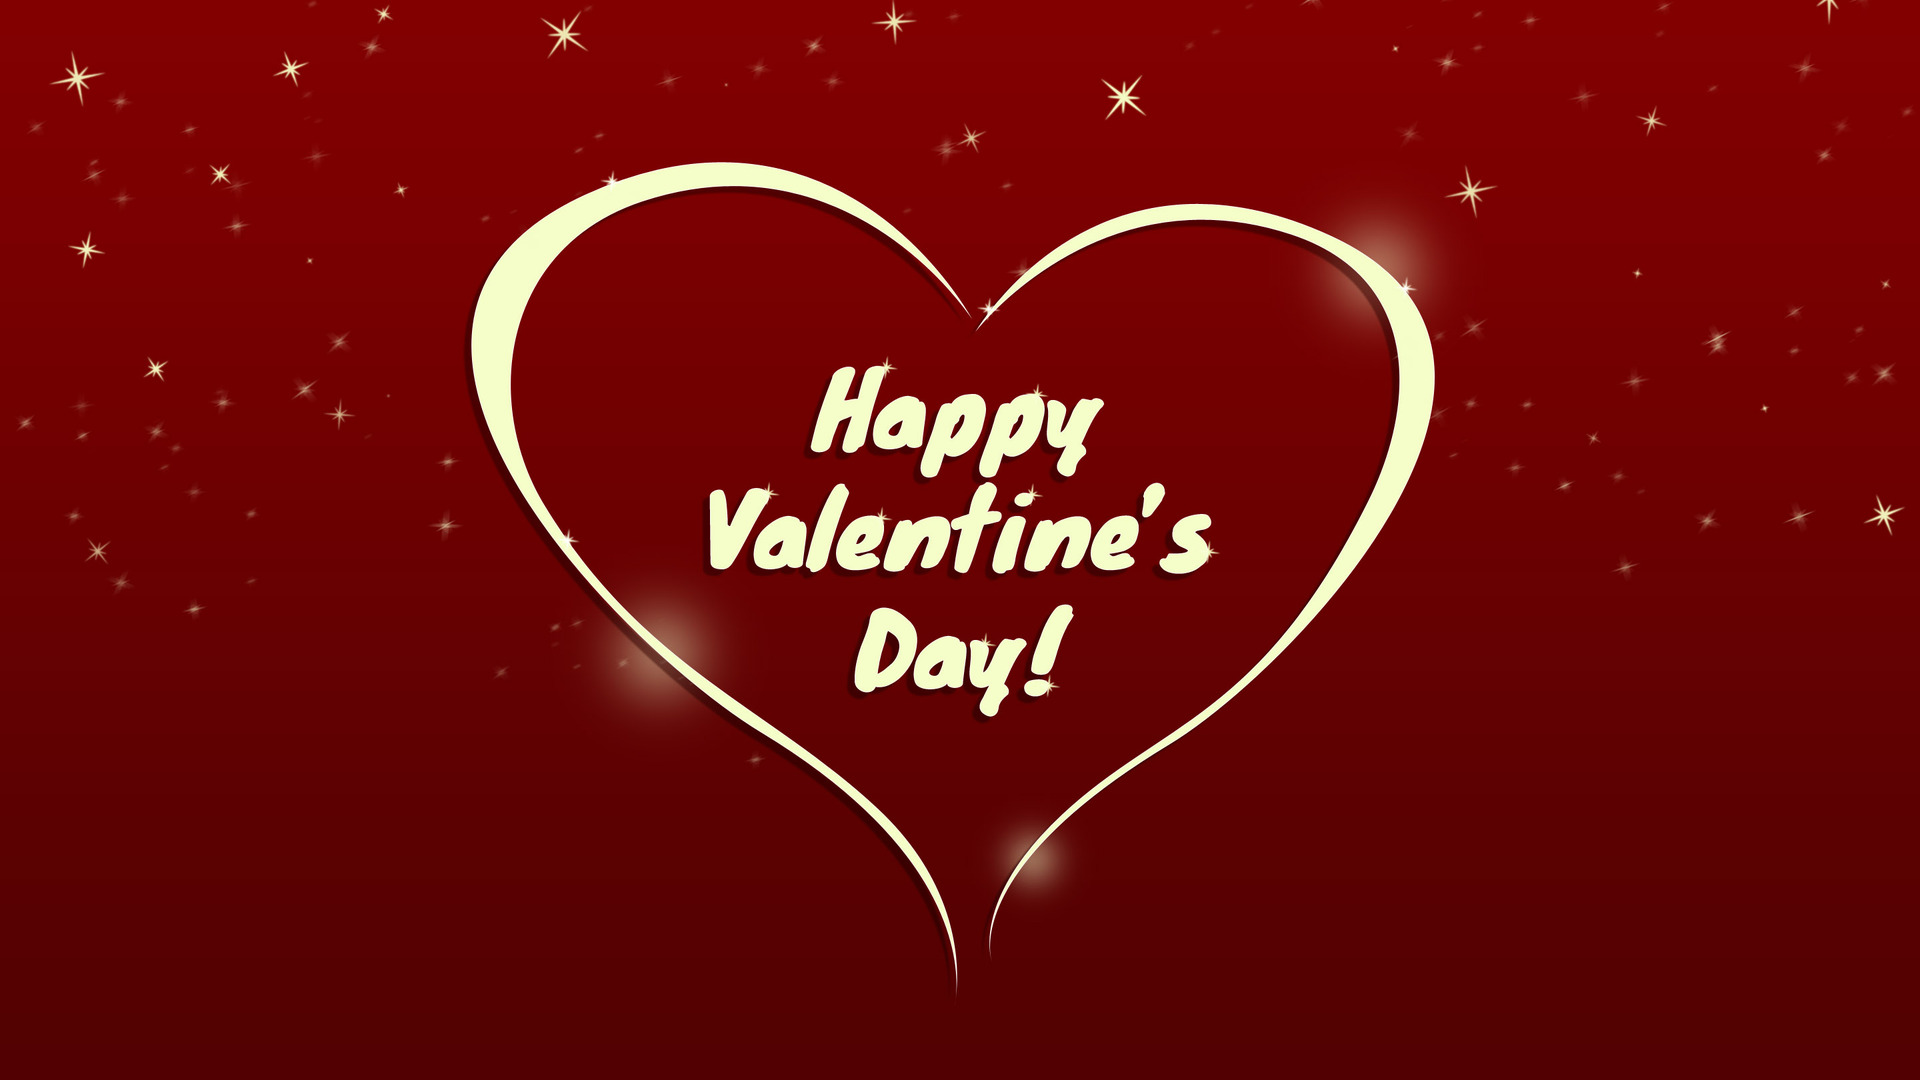 felice giorno di san valentino wallpaper hd,cuore,rosso,testo,amore,san valentino